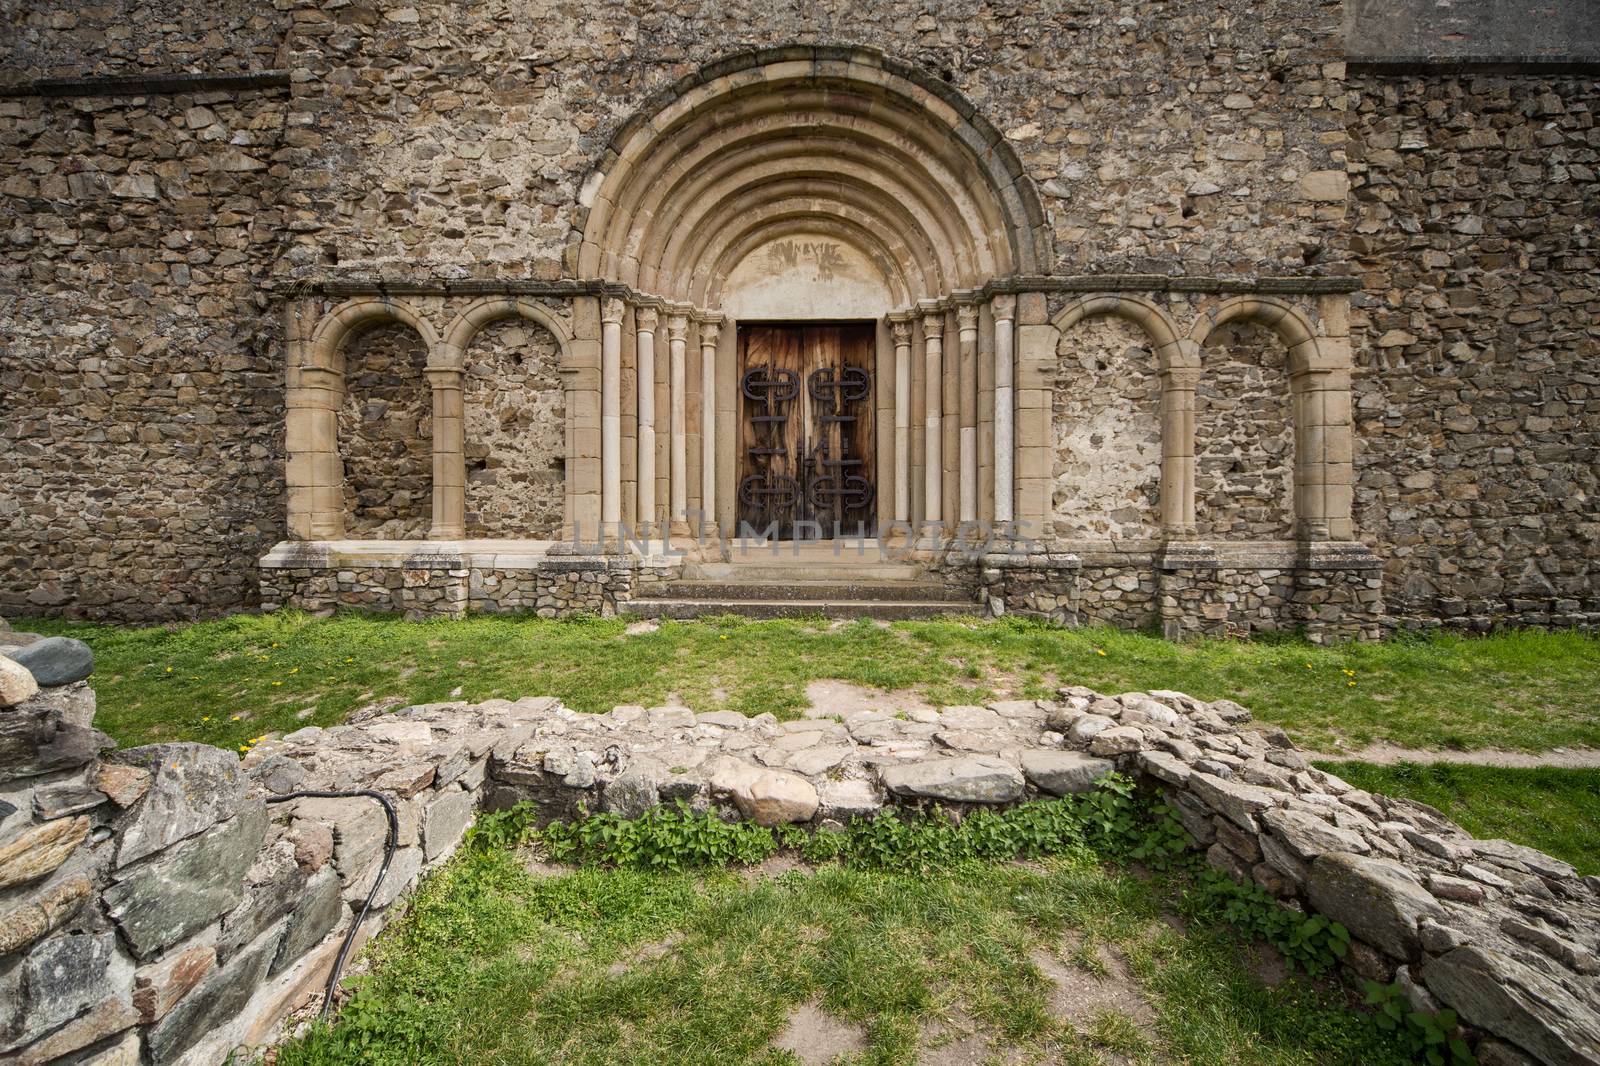 Romanesque church entrance. Cisnadioara, Romania